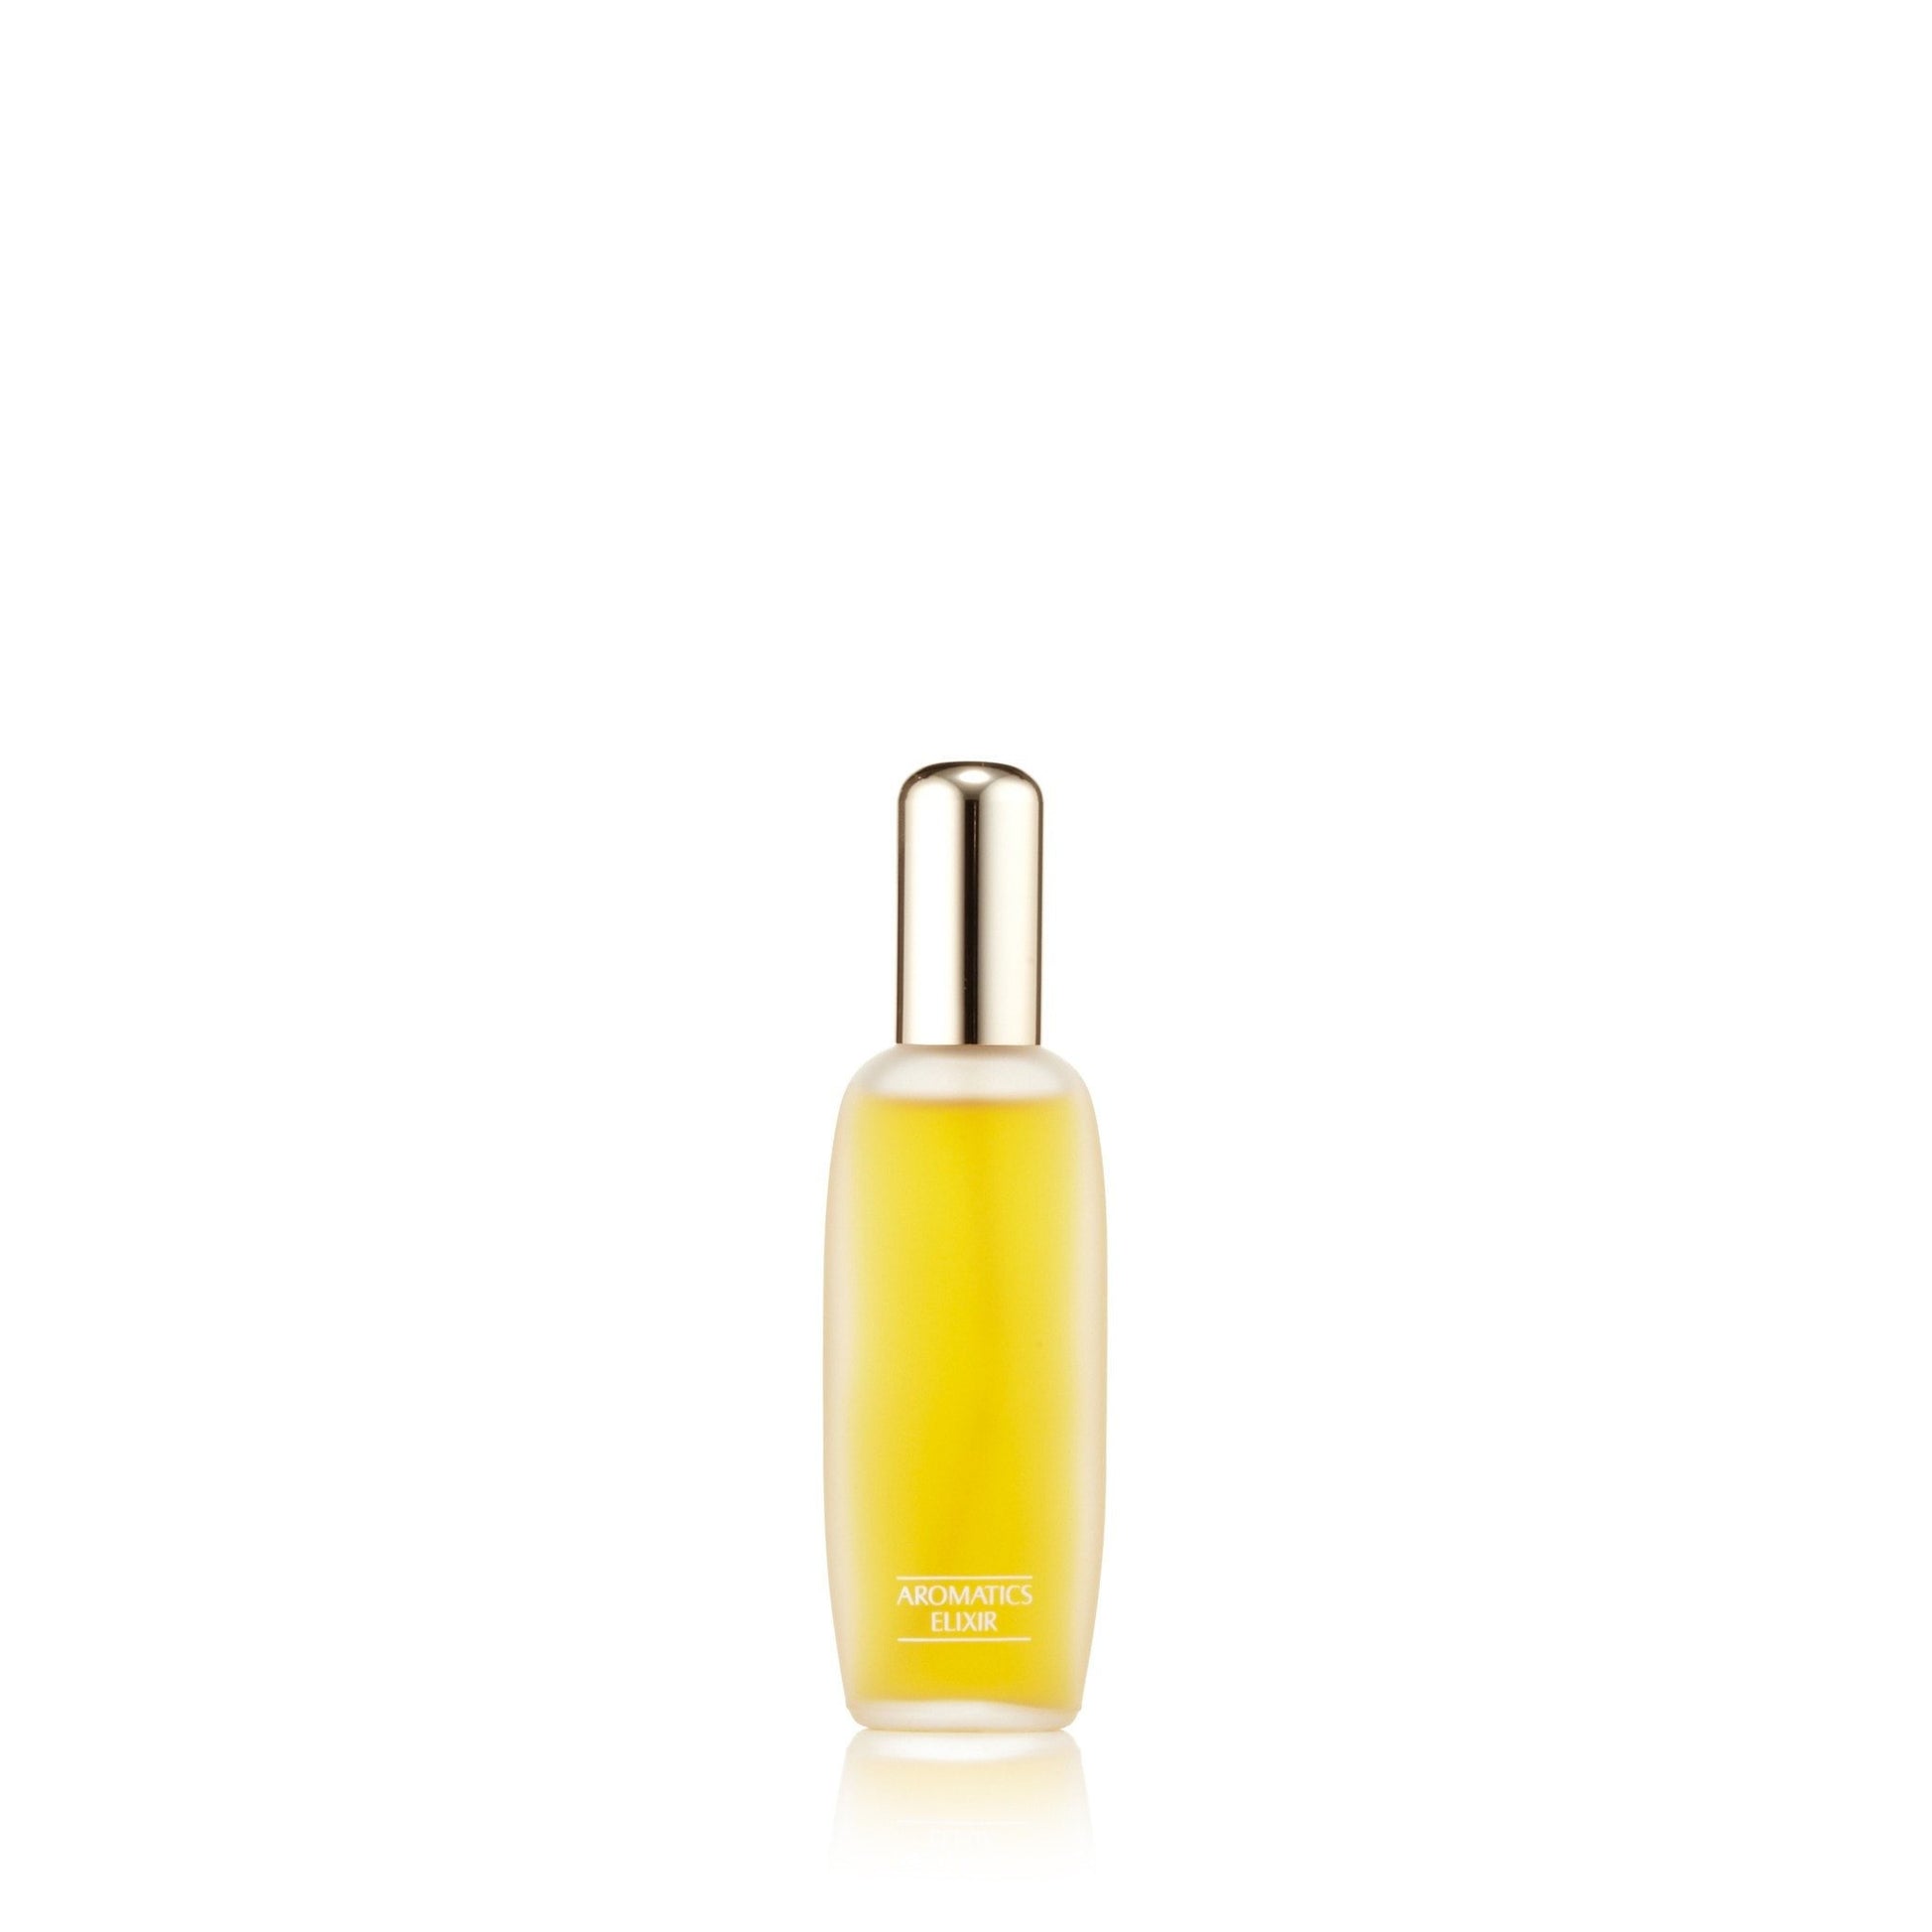 Aromatics Elixir Eau de Parfum Spray for Women by Clinique, Product image 5